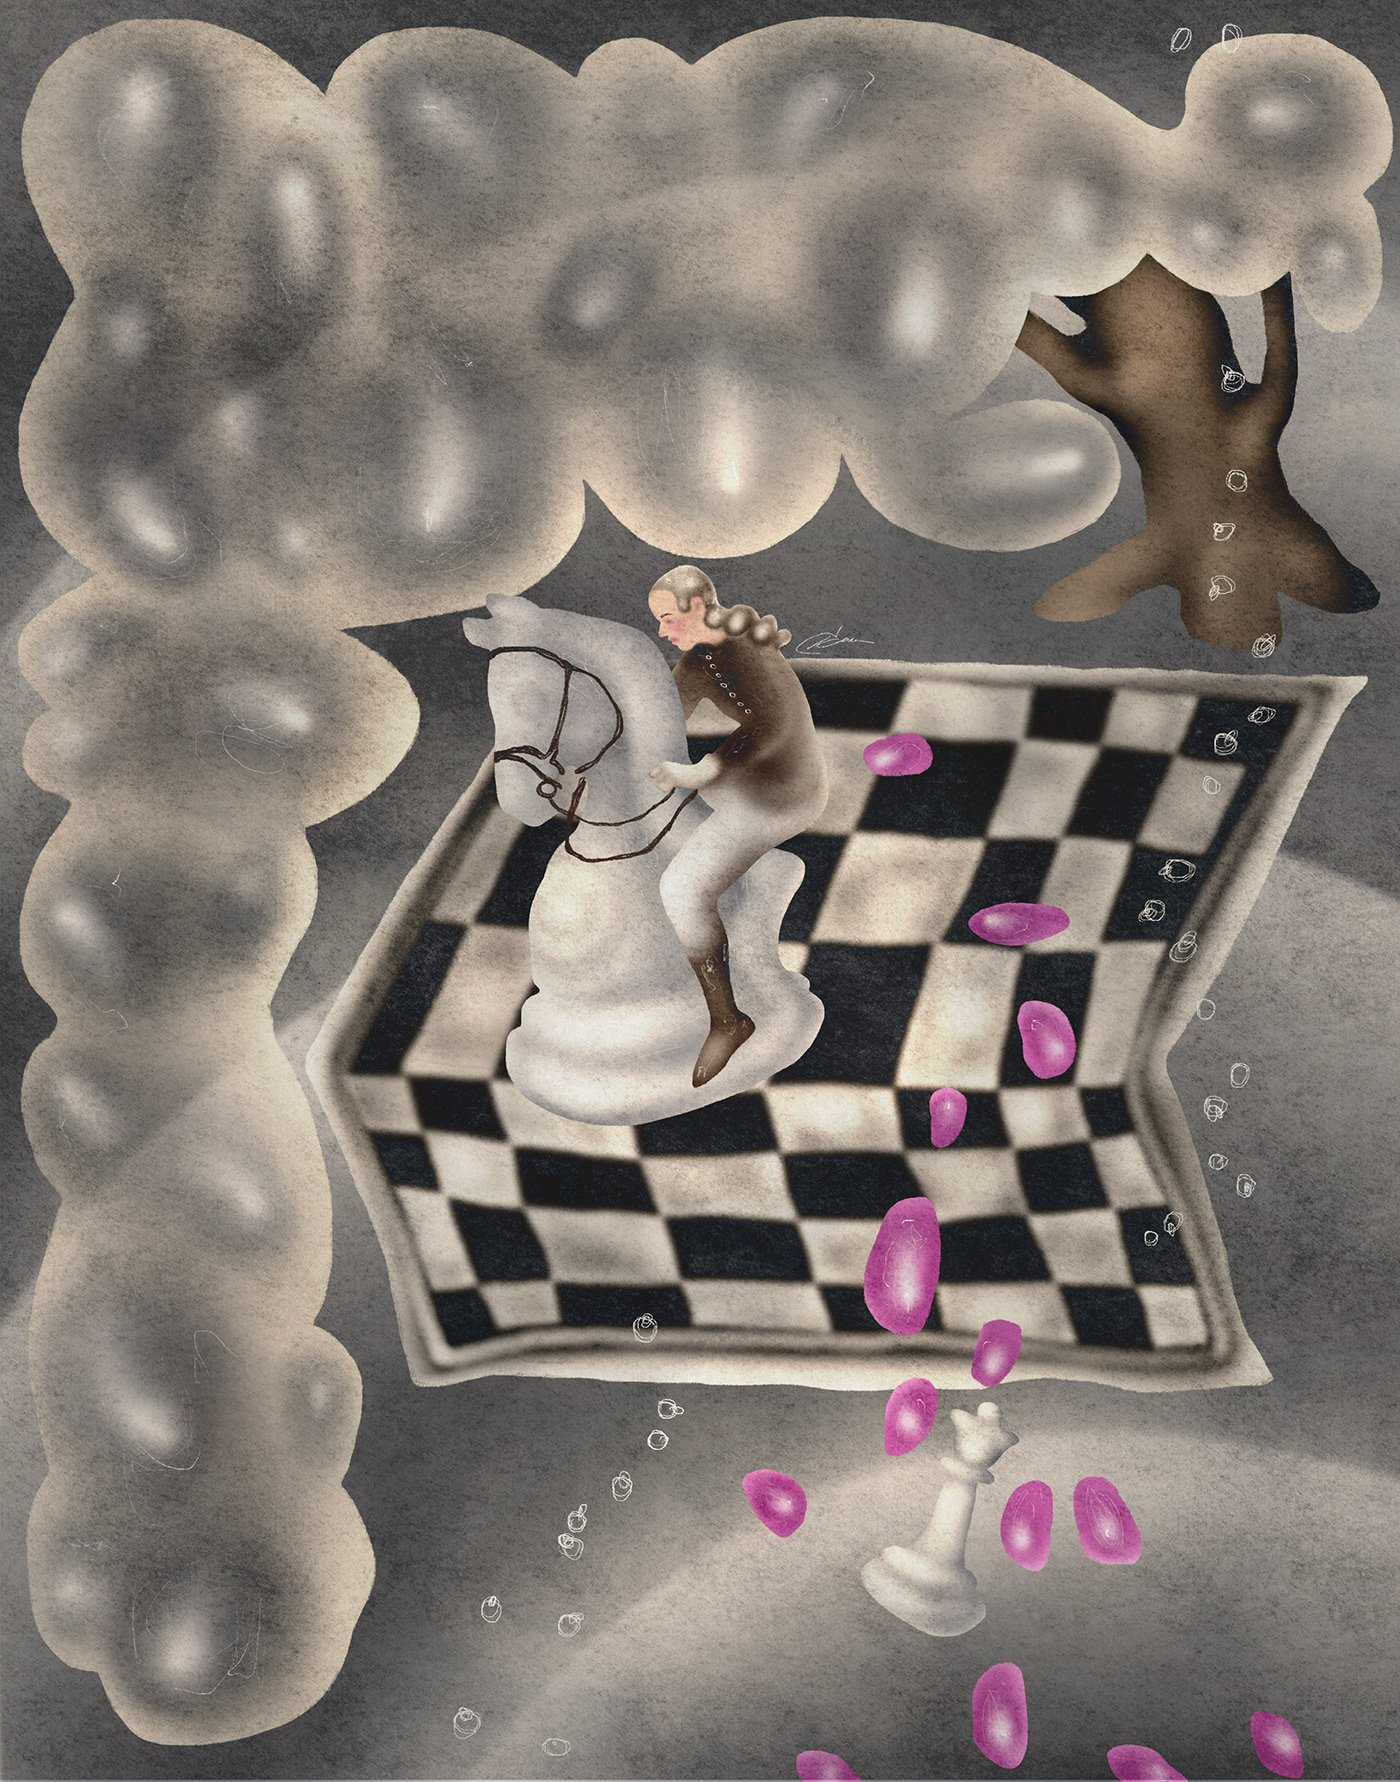 chess editorial Editorial Illustration Magazine illustration concept art digital illustration artist Digital Art 